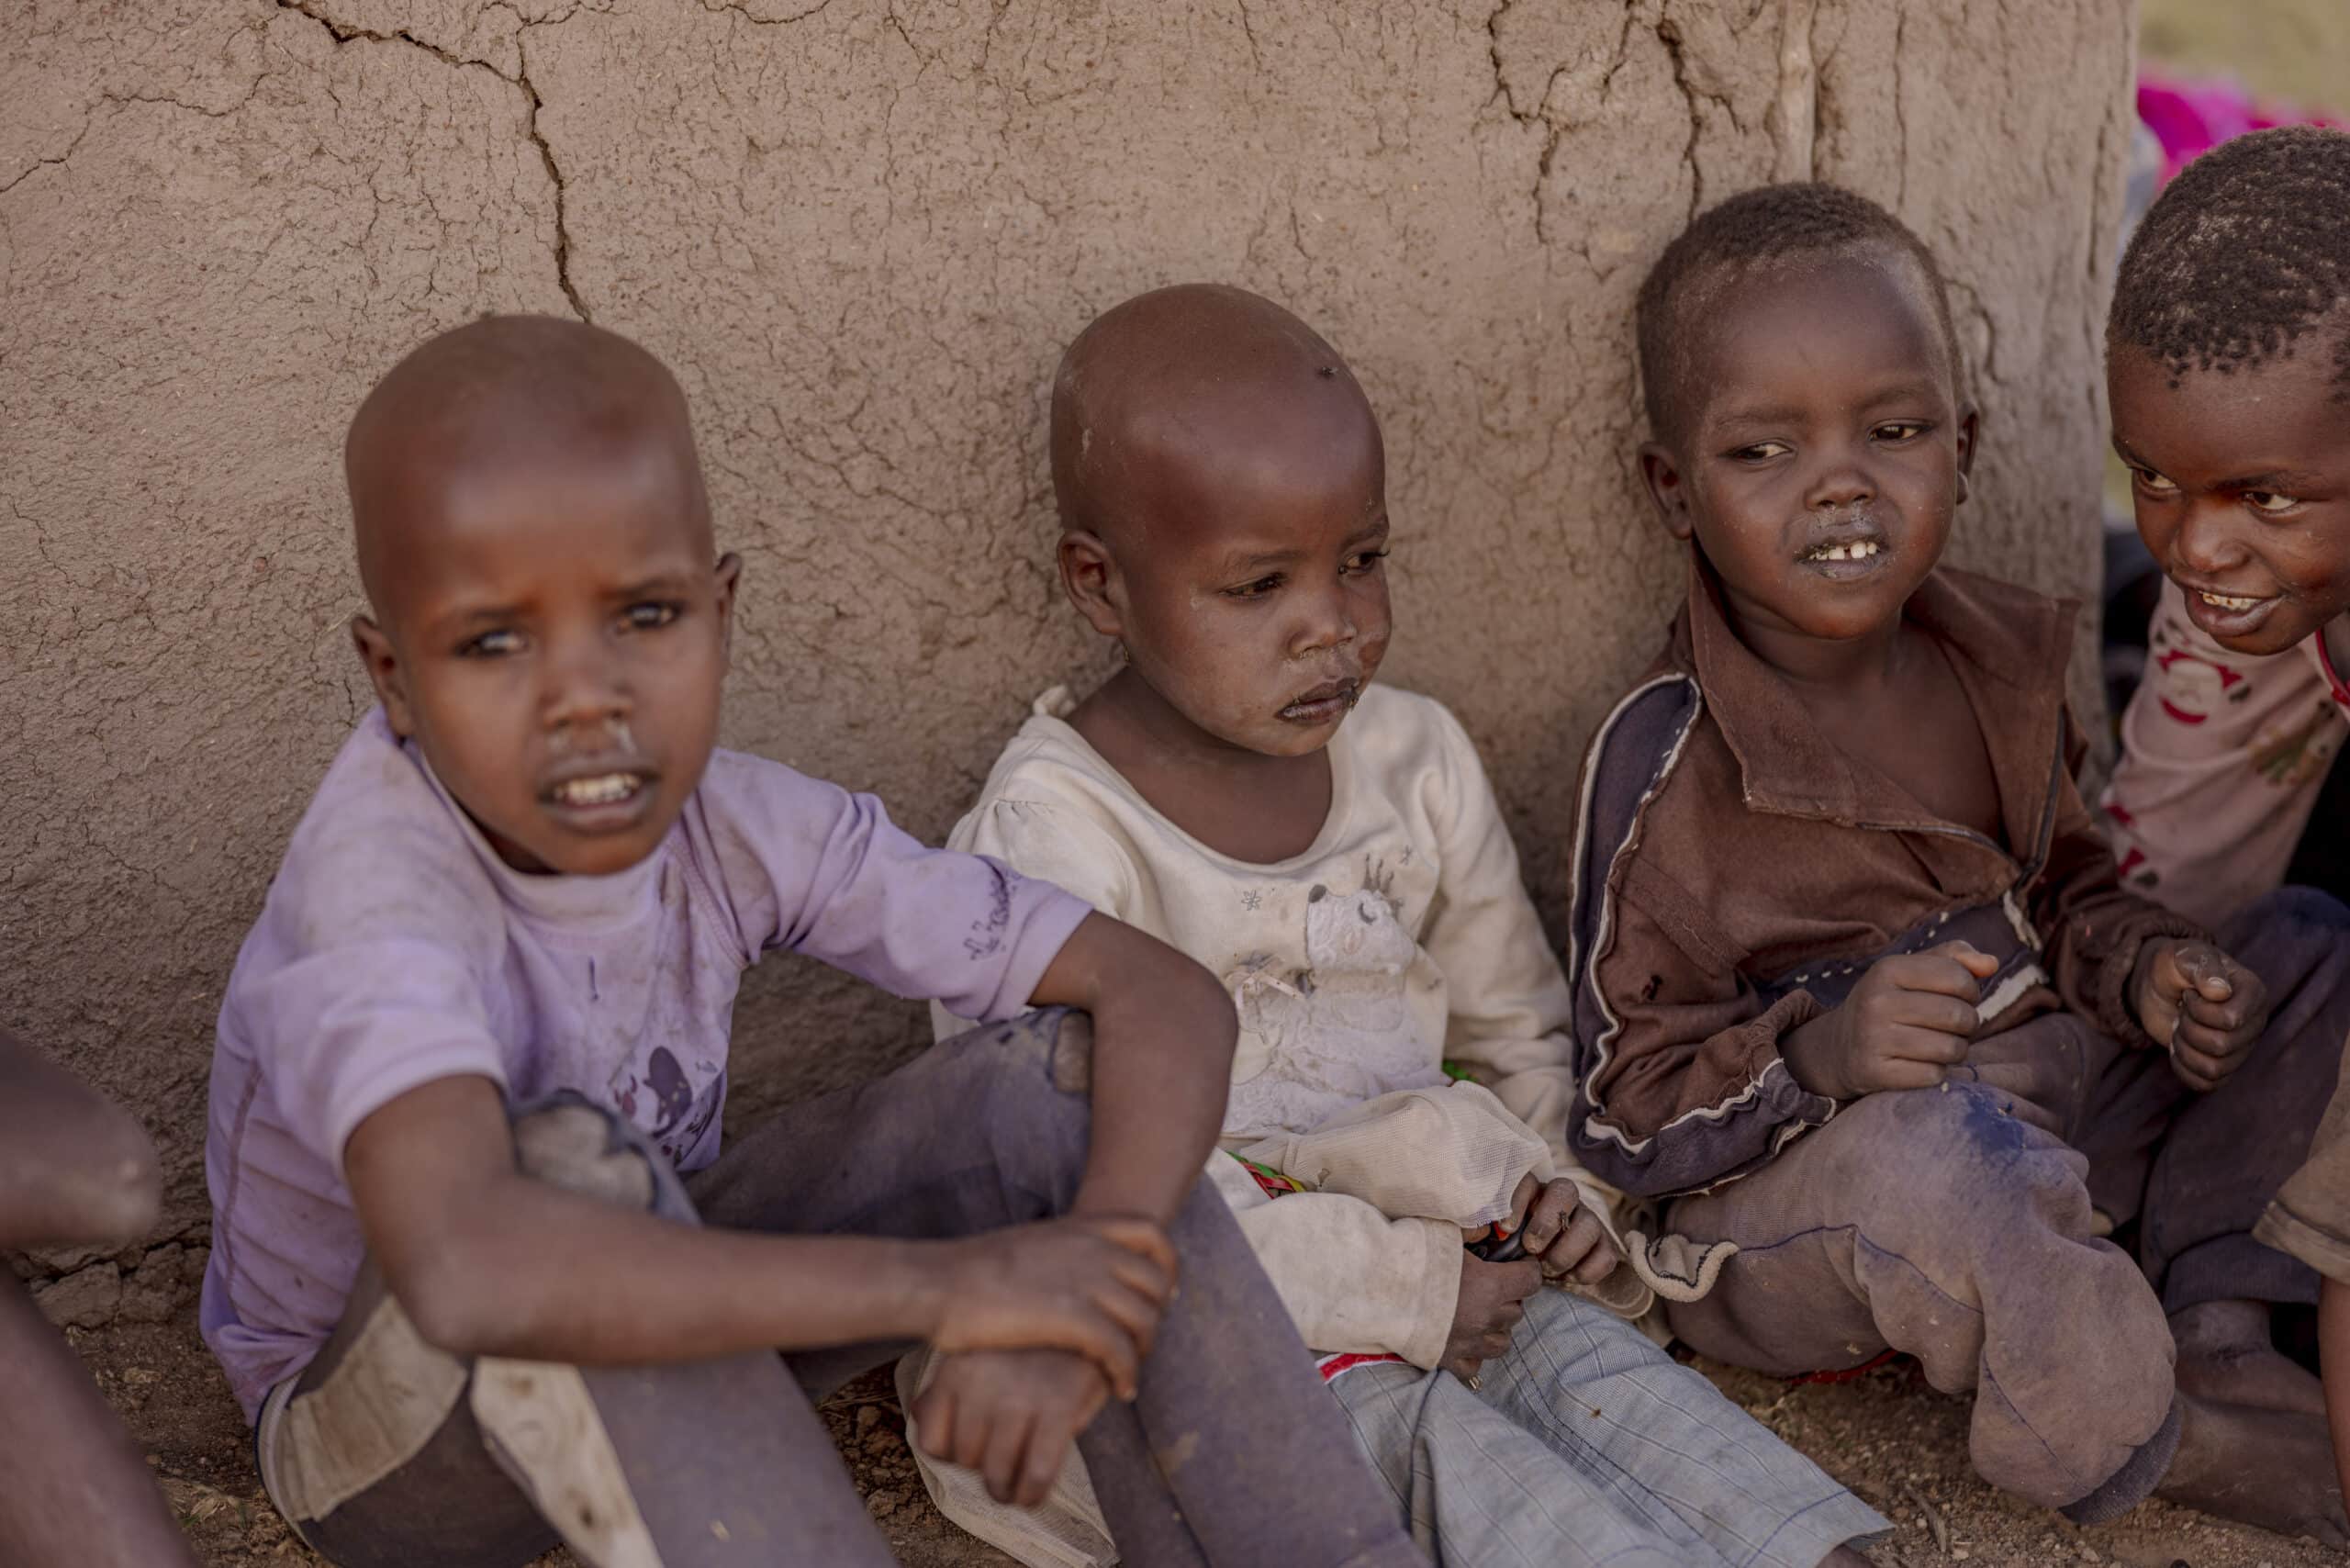 Vier kleine Kinder sitzen in einer ländlichen Umgebung zusammen an einer Lehmwand, sind verspielt und lächeln. Die Kinder scheinen zu spielen und die Gesellschaft des anderen zu genießen. © Fotografie Tomas Rodriguez